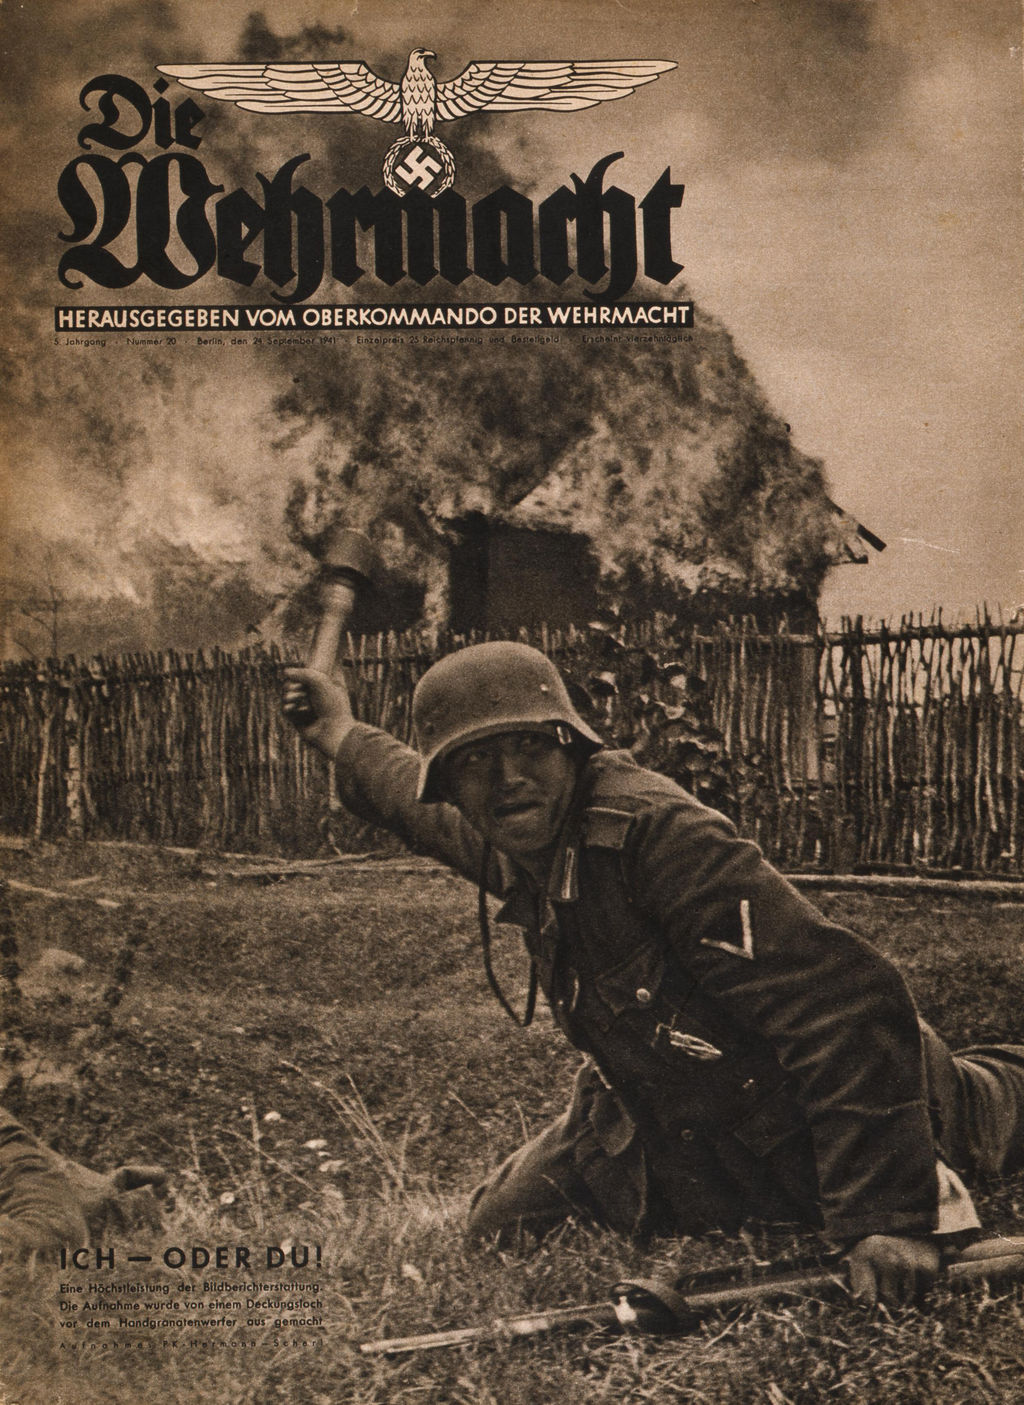 Exponat: Zeitschrift: "Die Wehrmacht", 1941